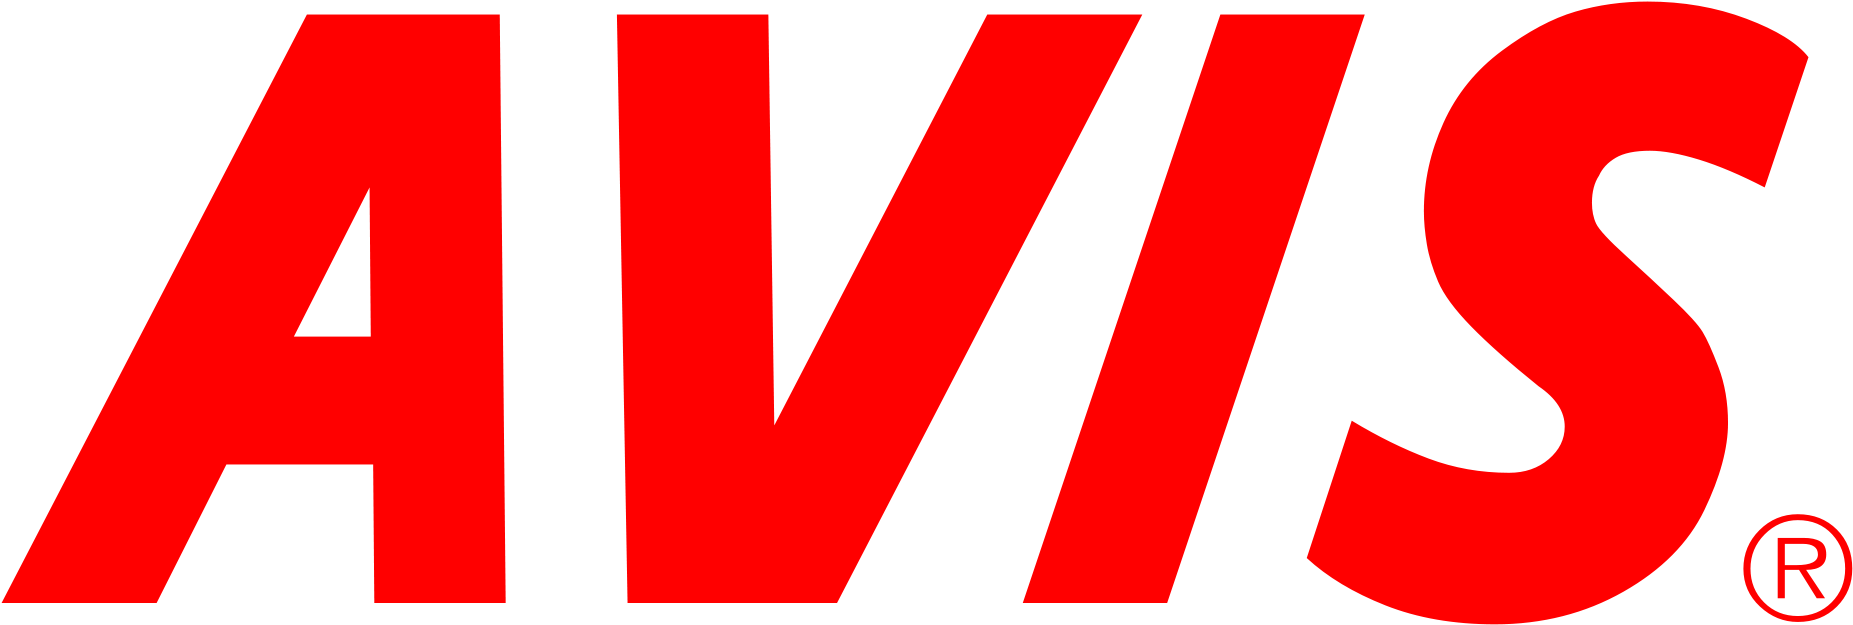 Avis Coupon Code - Logo De Avis Clipart (2000x785), Png Download